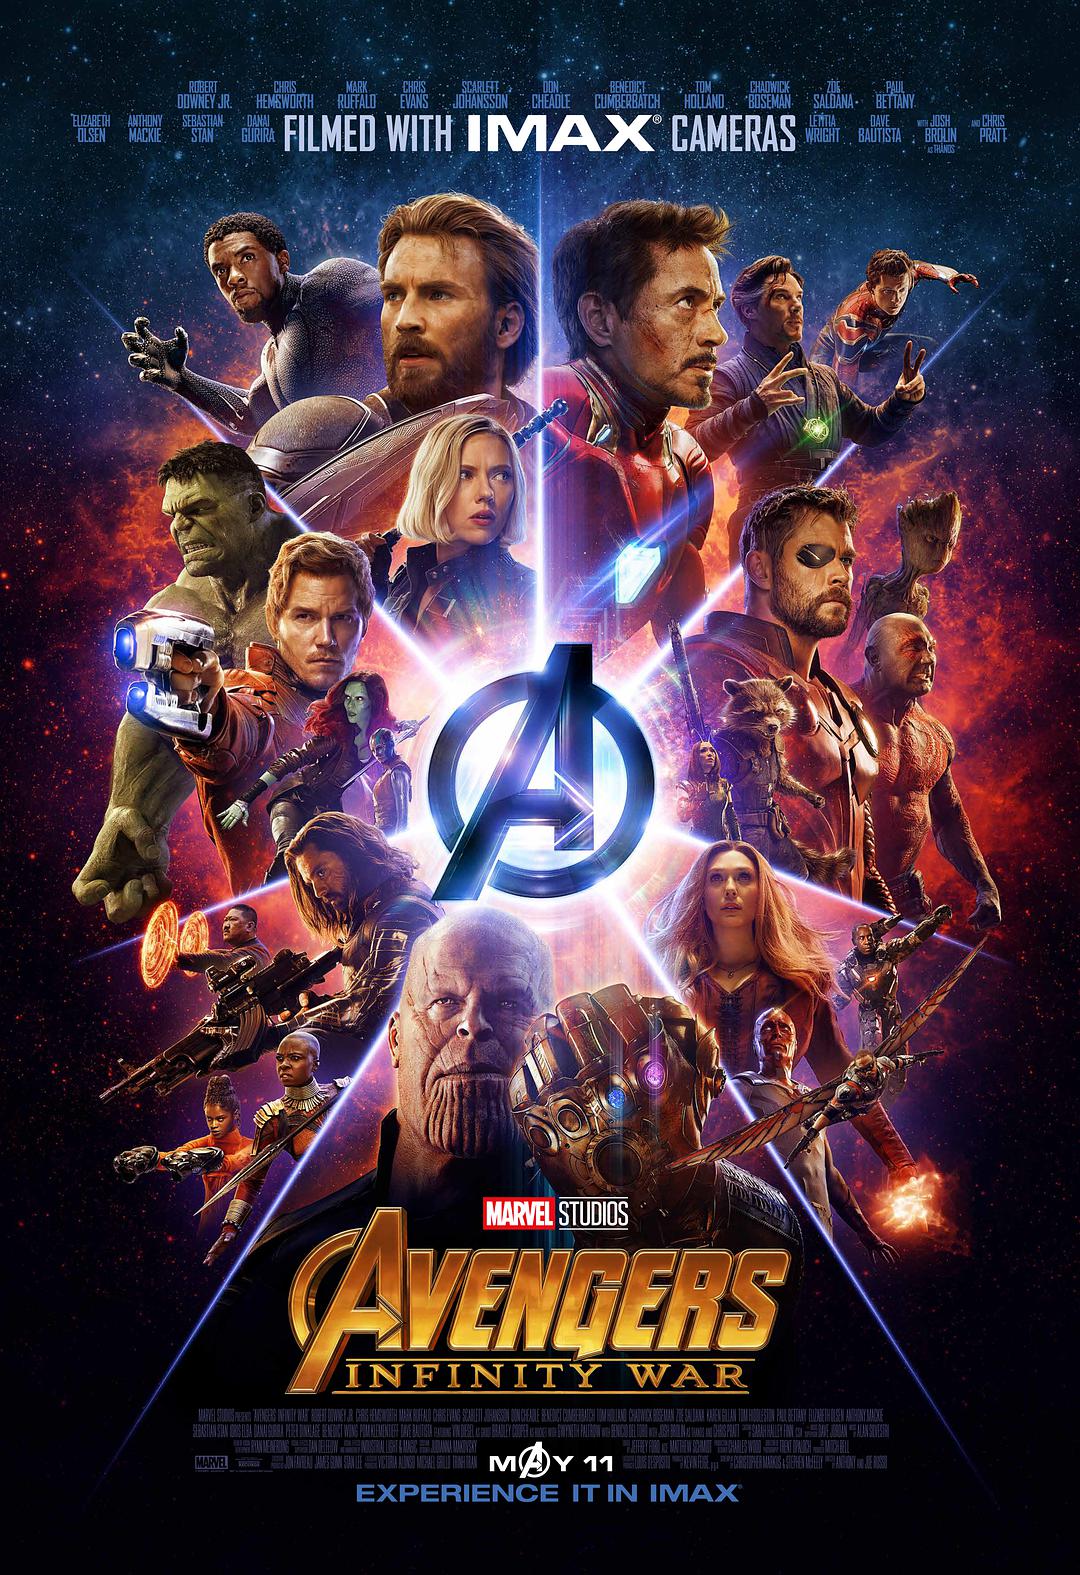 复仇者联盟3：无限战争 4K 3D蓝光原盘下载+高清MKV版 /复仇者联盟3：无限之战(港)/复仇者联盟：无限之战(台)/复仇者联盟3：无尽之战/复联3/妇联3(豆友译名)/复仇者联盟3：灭霸传 2018 Avengers: Infinity War 61.4G